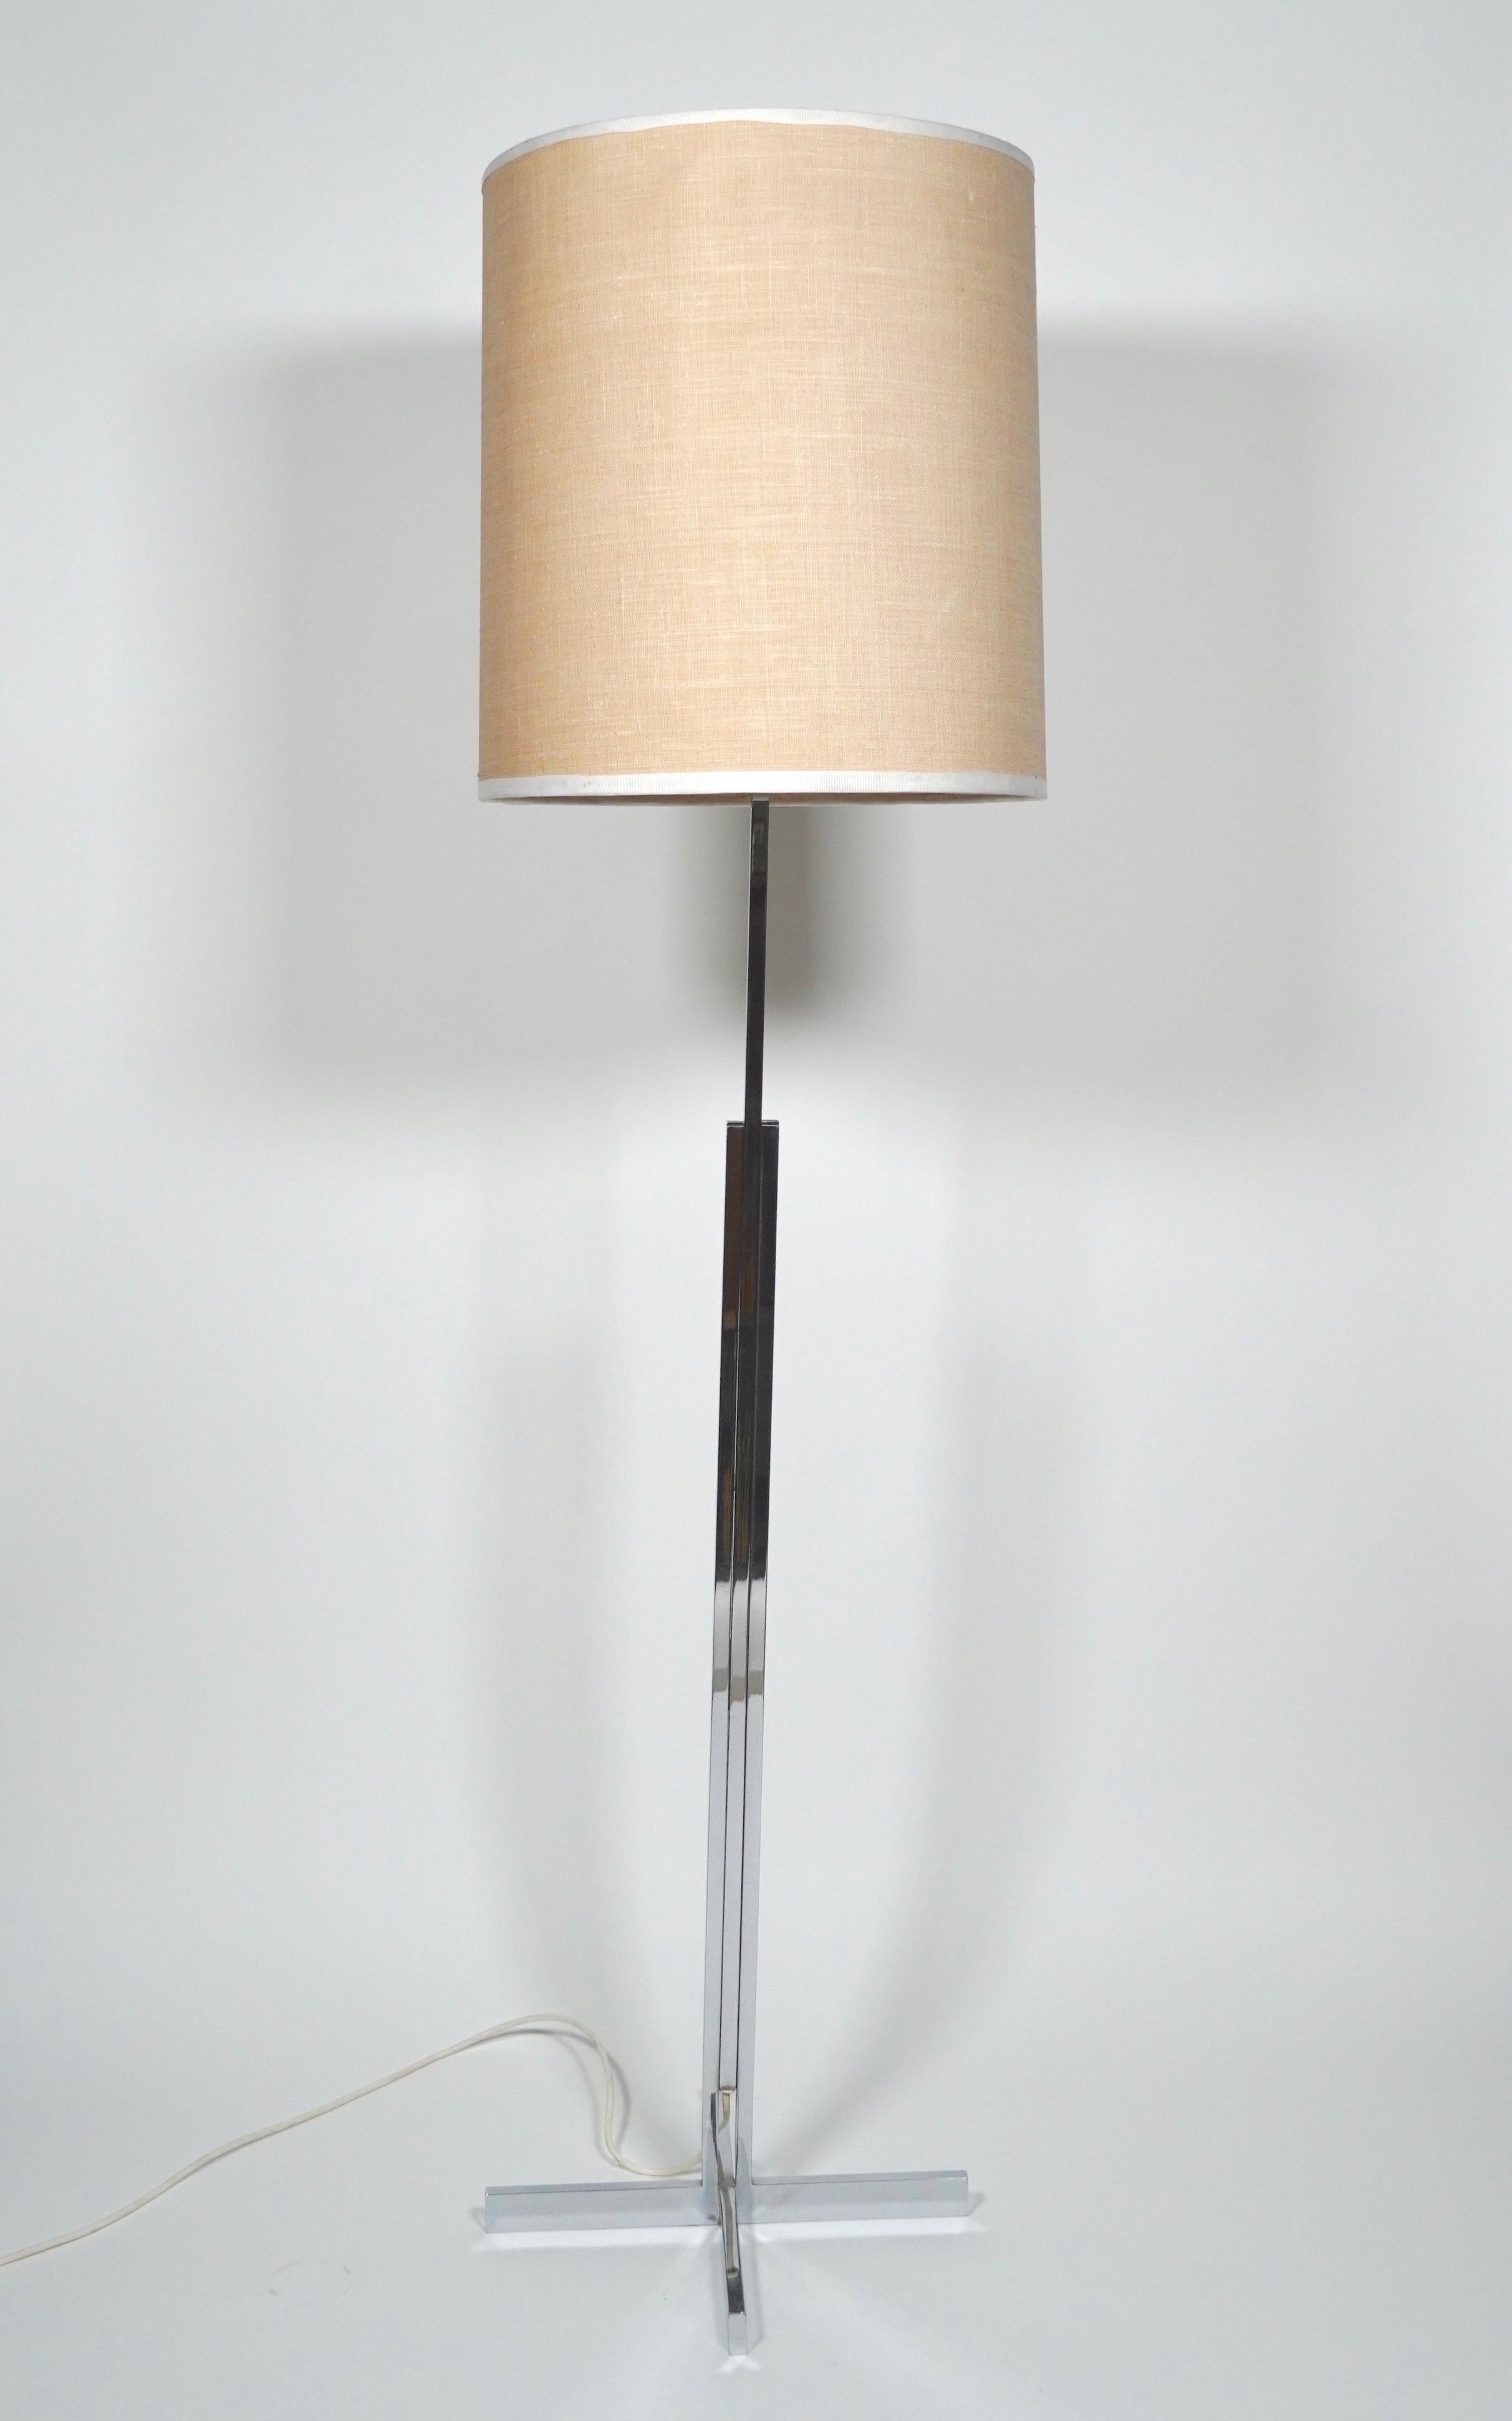 Lampadaire de style international en chrome et lin, datant des années 1960, originaire de Suisse. Composé d'un cadre chromé à trois parties en tube carré reposant sur une base rectangulaire à quatre points créant un profil élancé. Le mécanisme